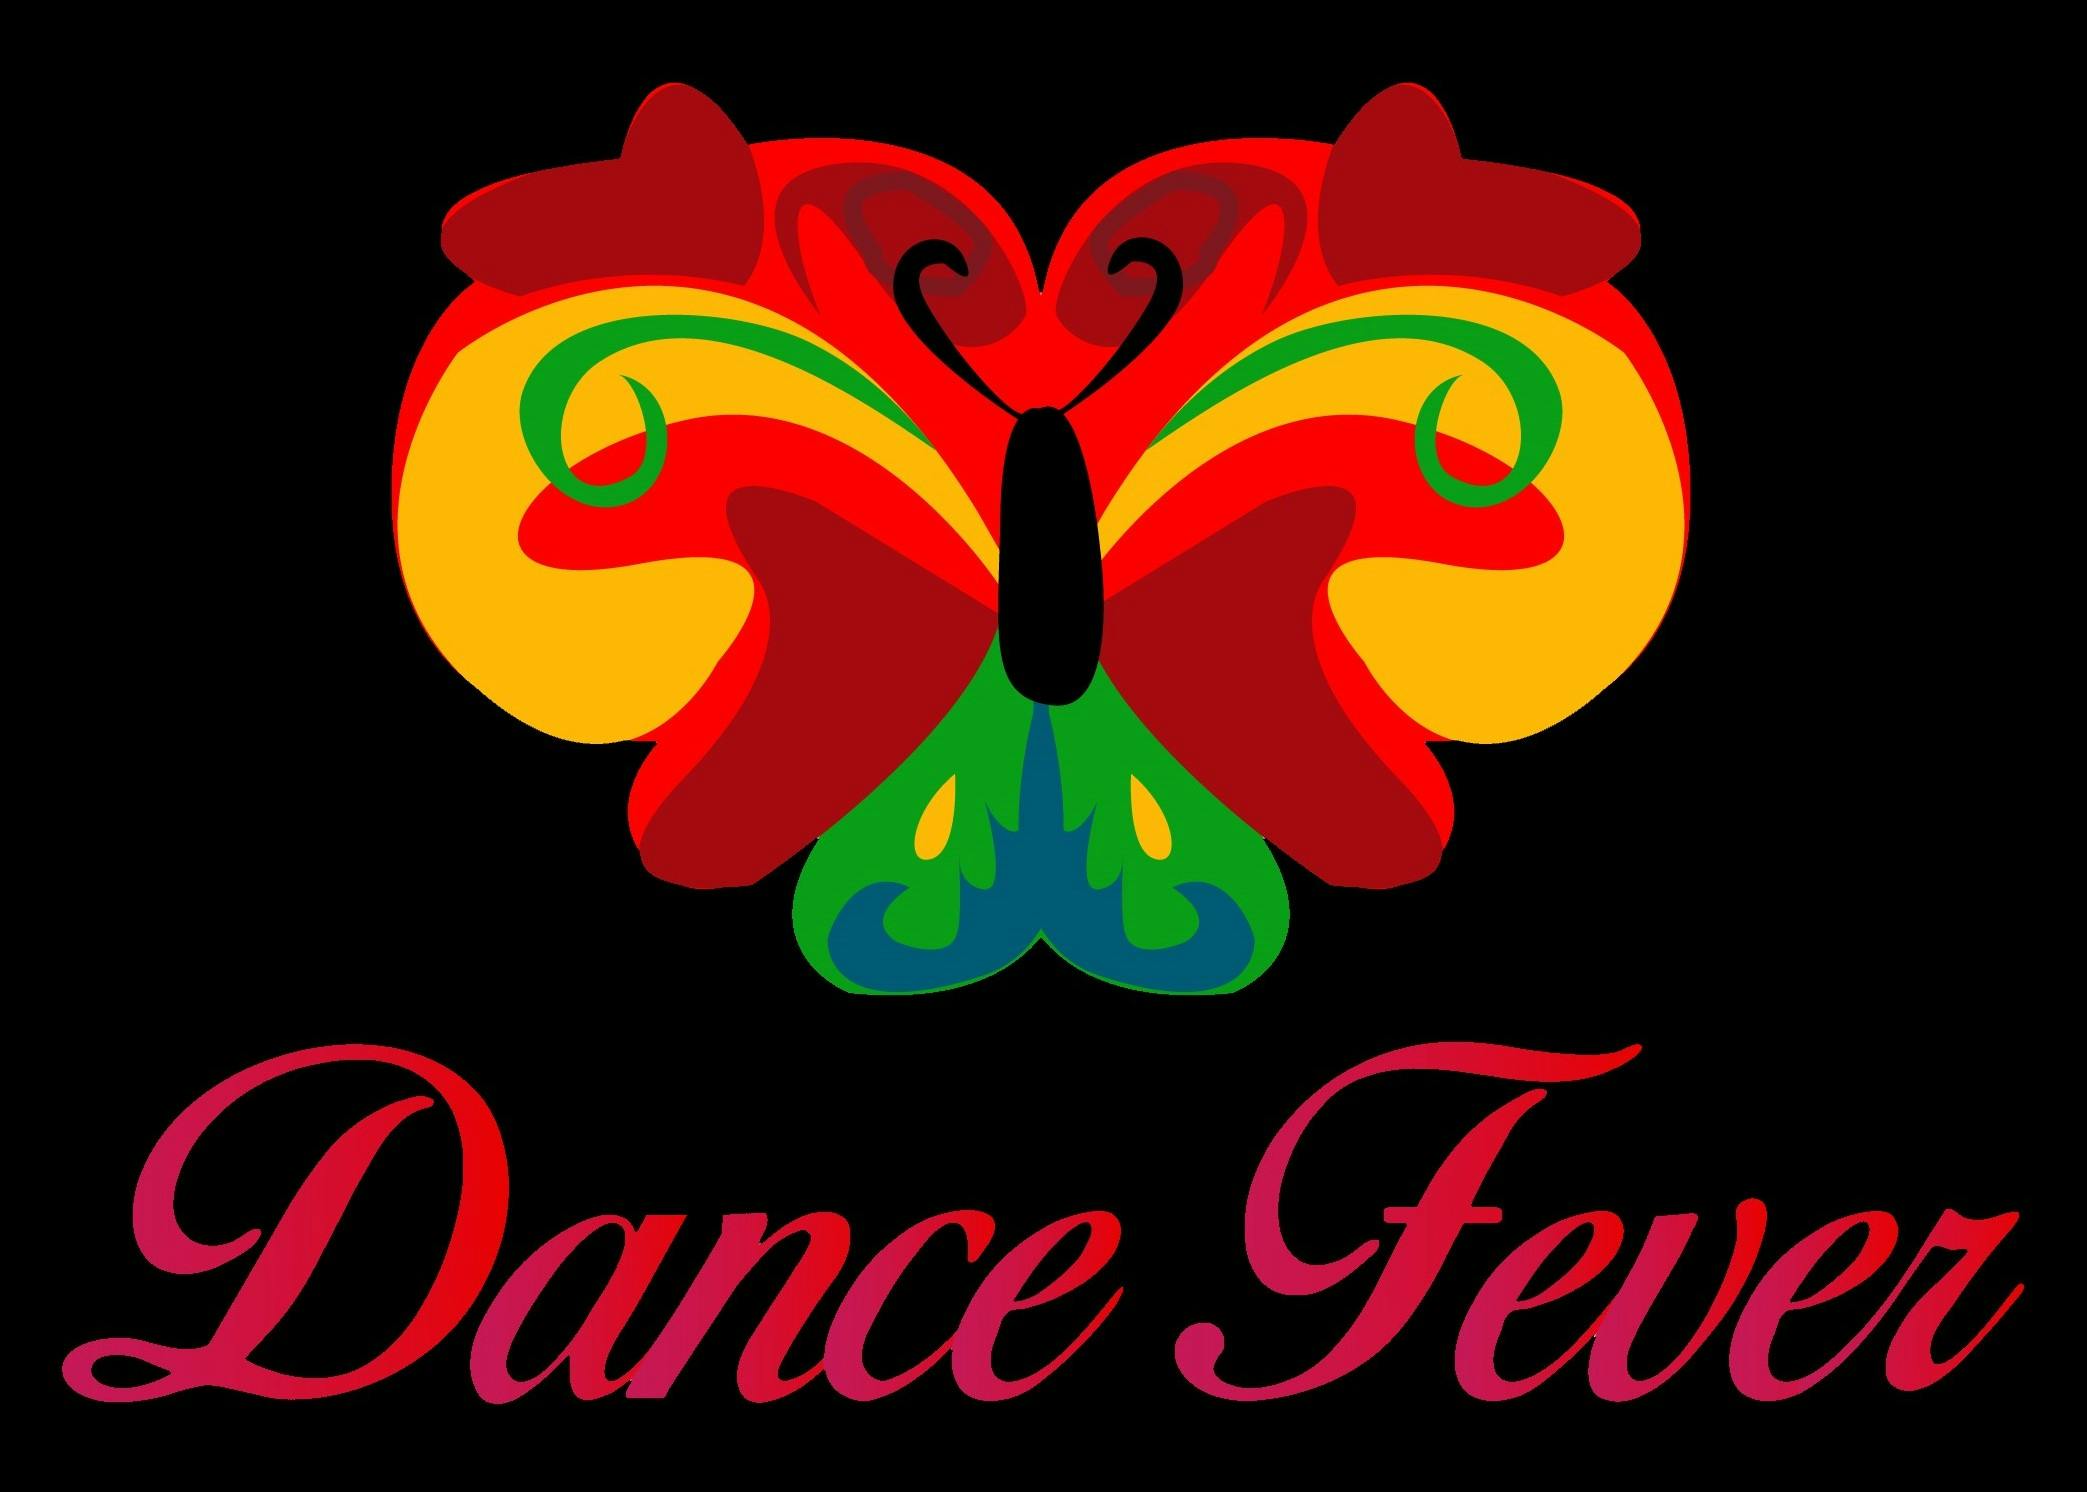 Dance Fever - Ledebergse Feesten